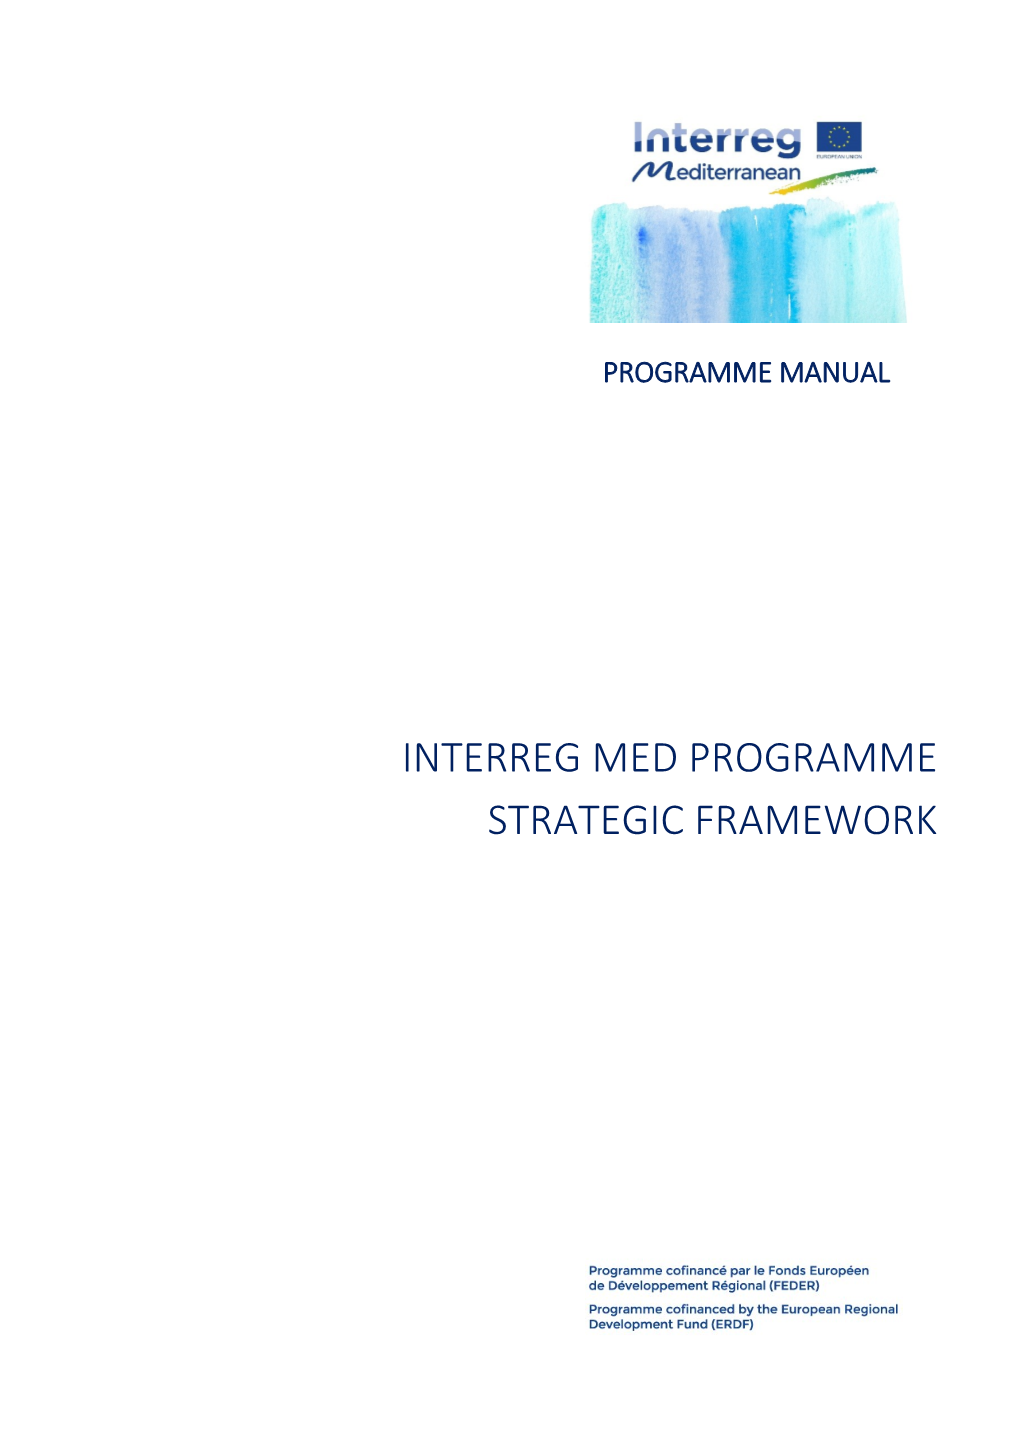 Interreg Med Programme Strategic Framework